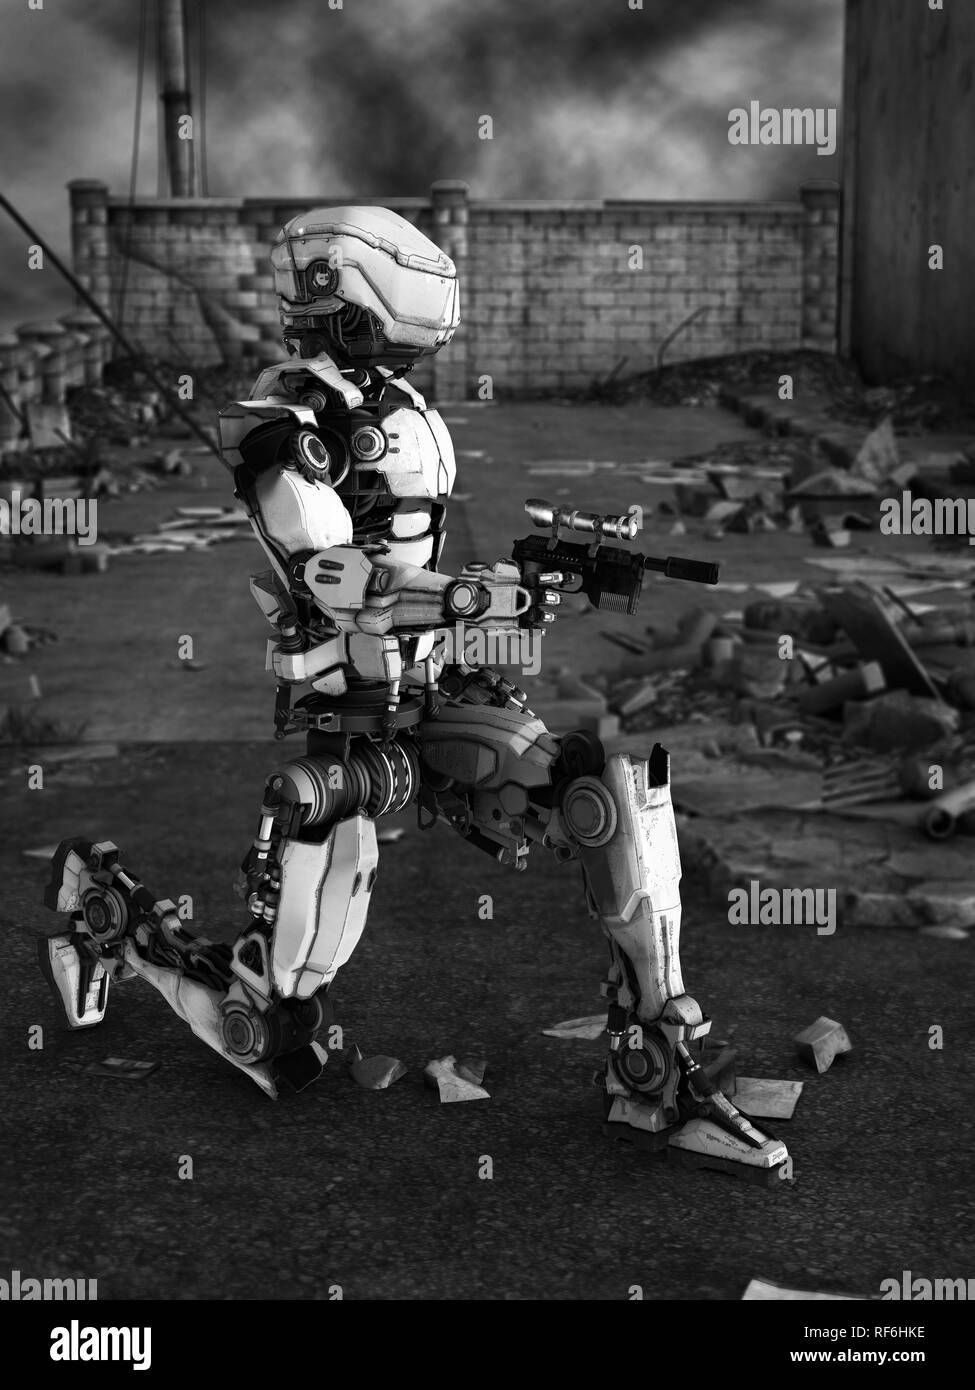 Image en noir et blanc d'un robot futuriste holding gun, une guerre dans une ville en ruines. Banque D'Images